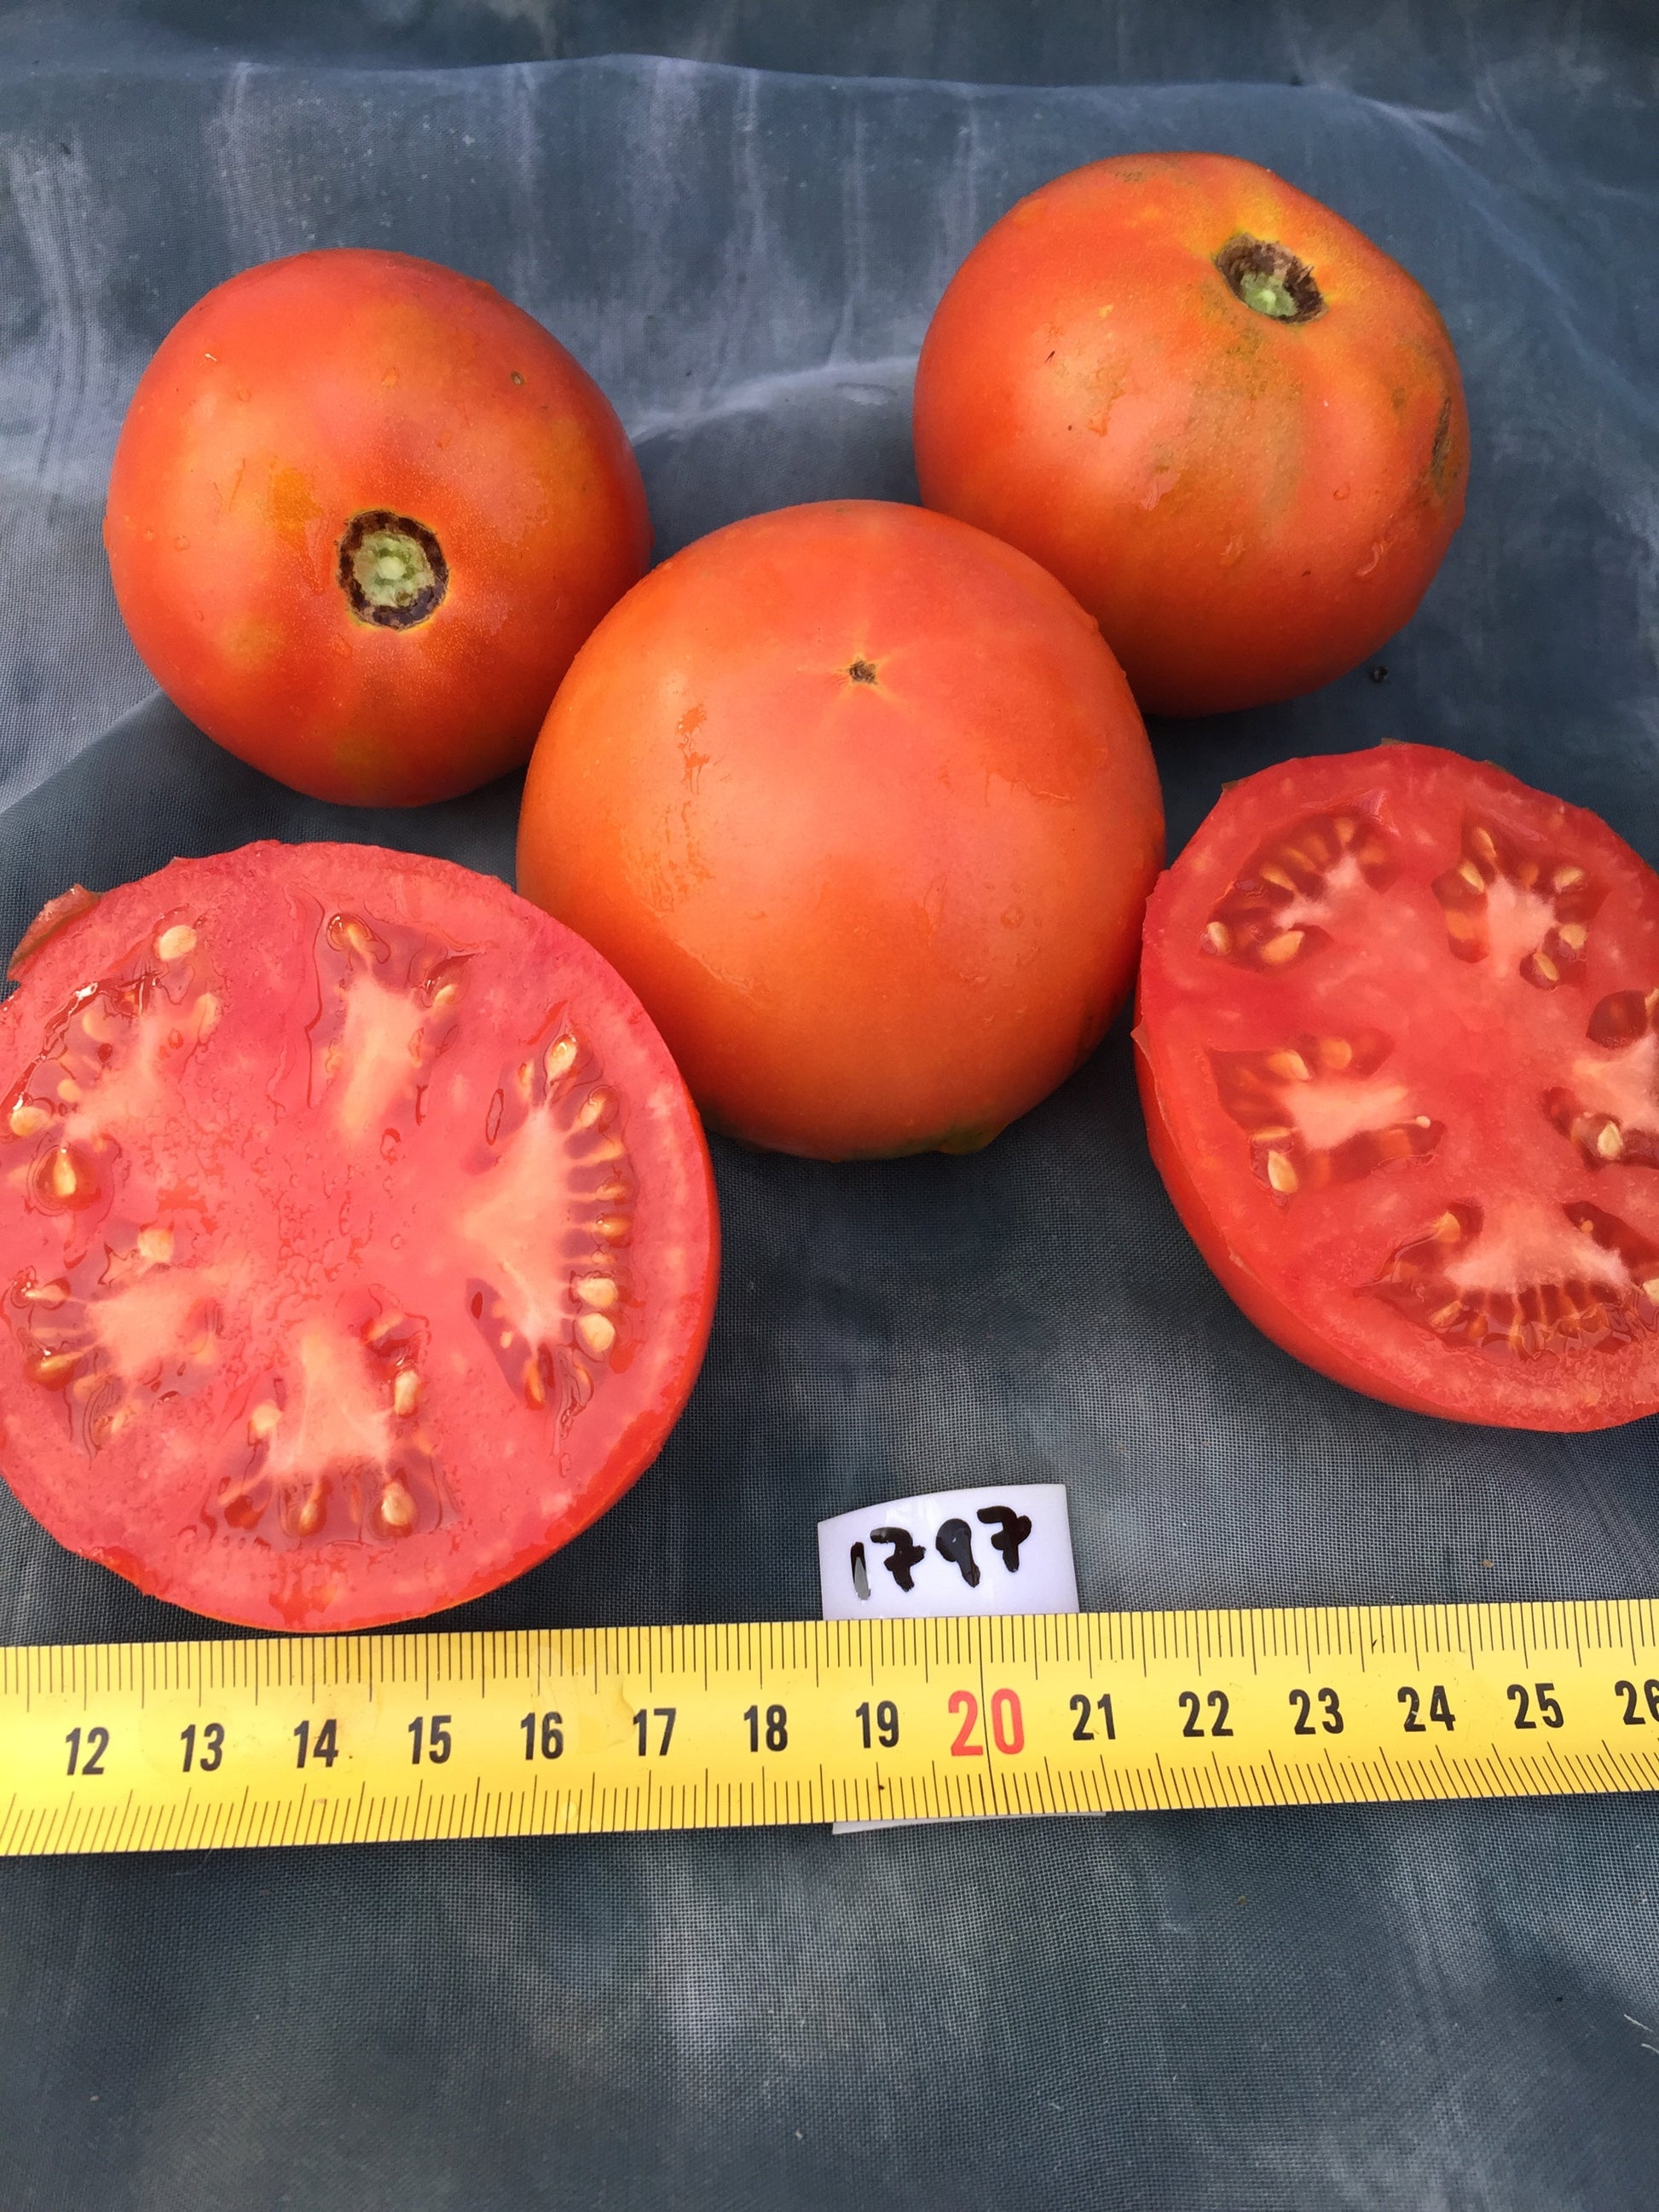 Druzba tomato